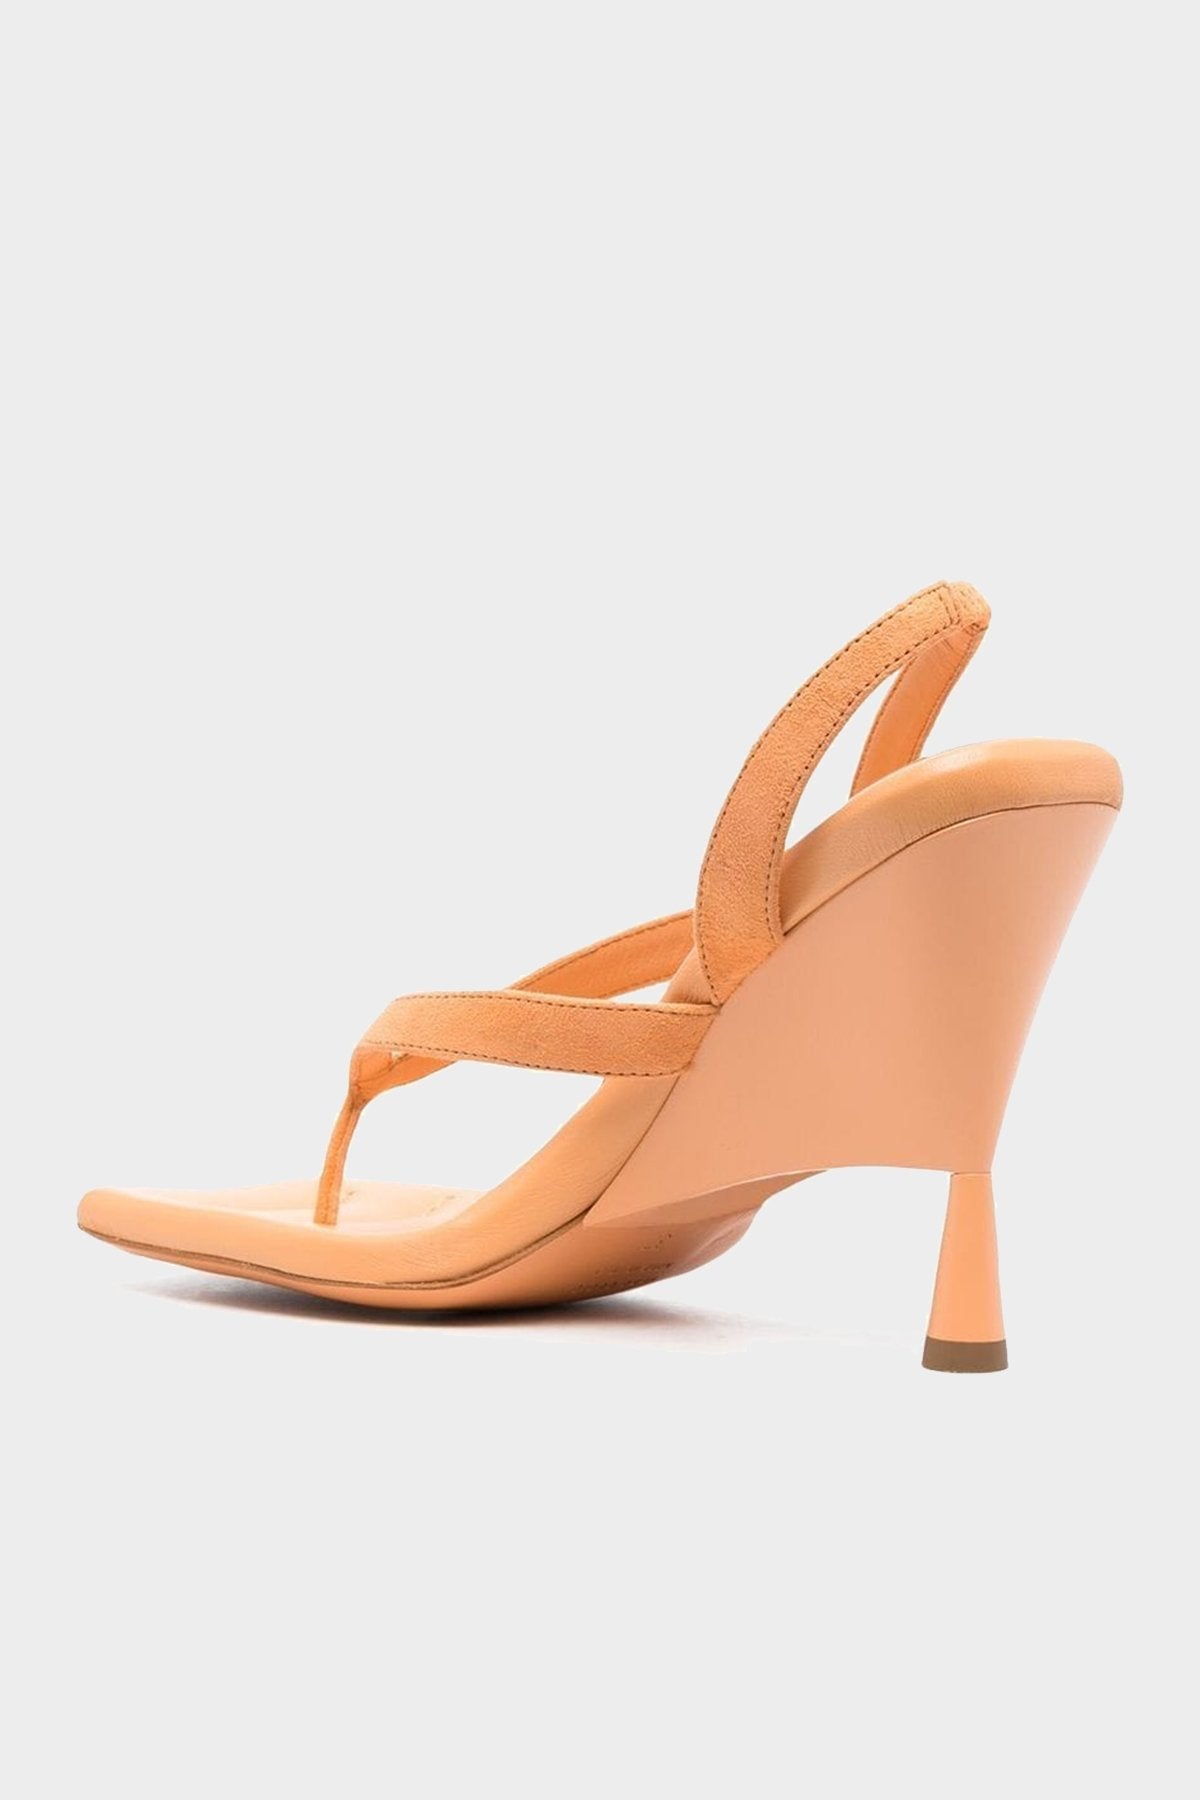 Suede Thong Wedge Sandal in Light Orange - shop-olivia.com